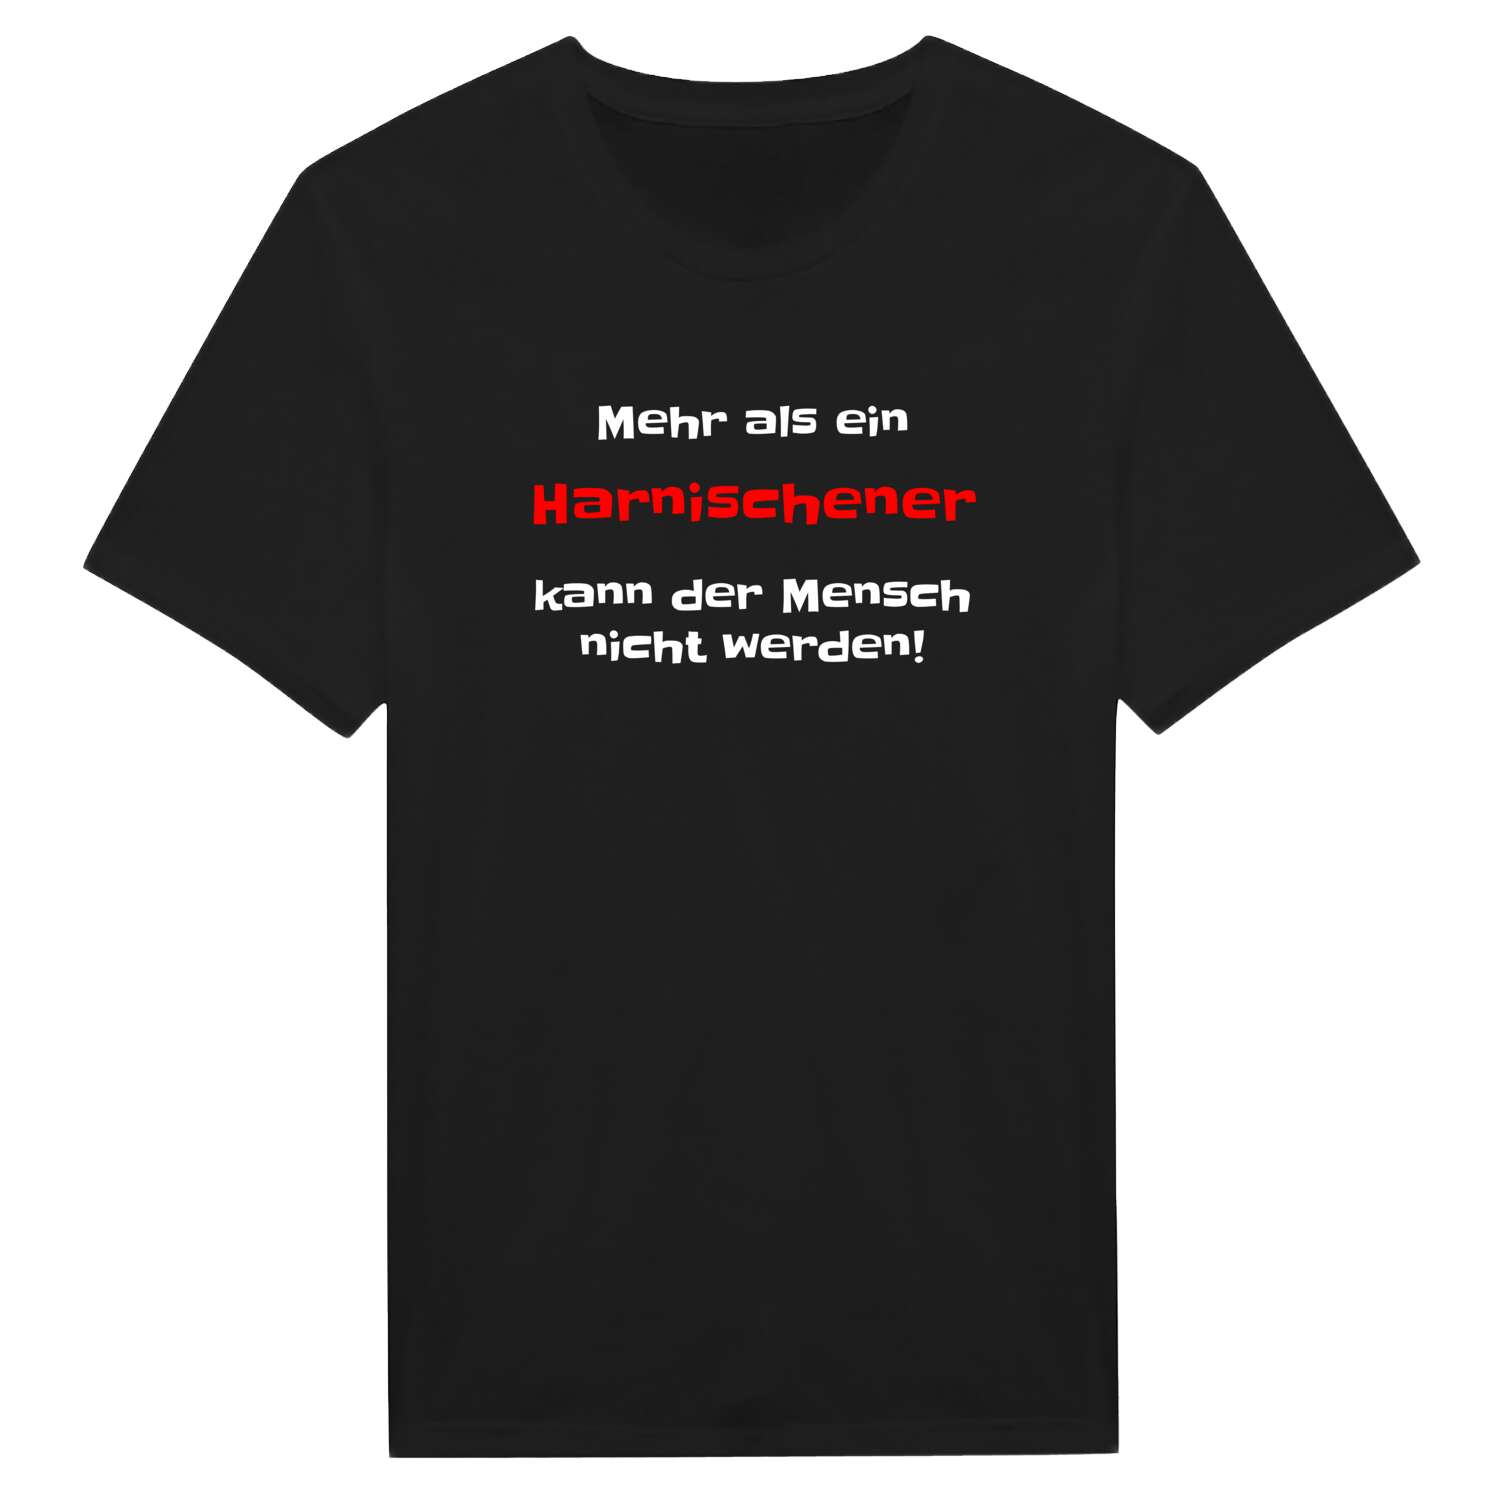 Harnisch T-Shirt »Mehr als ein«